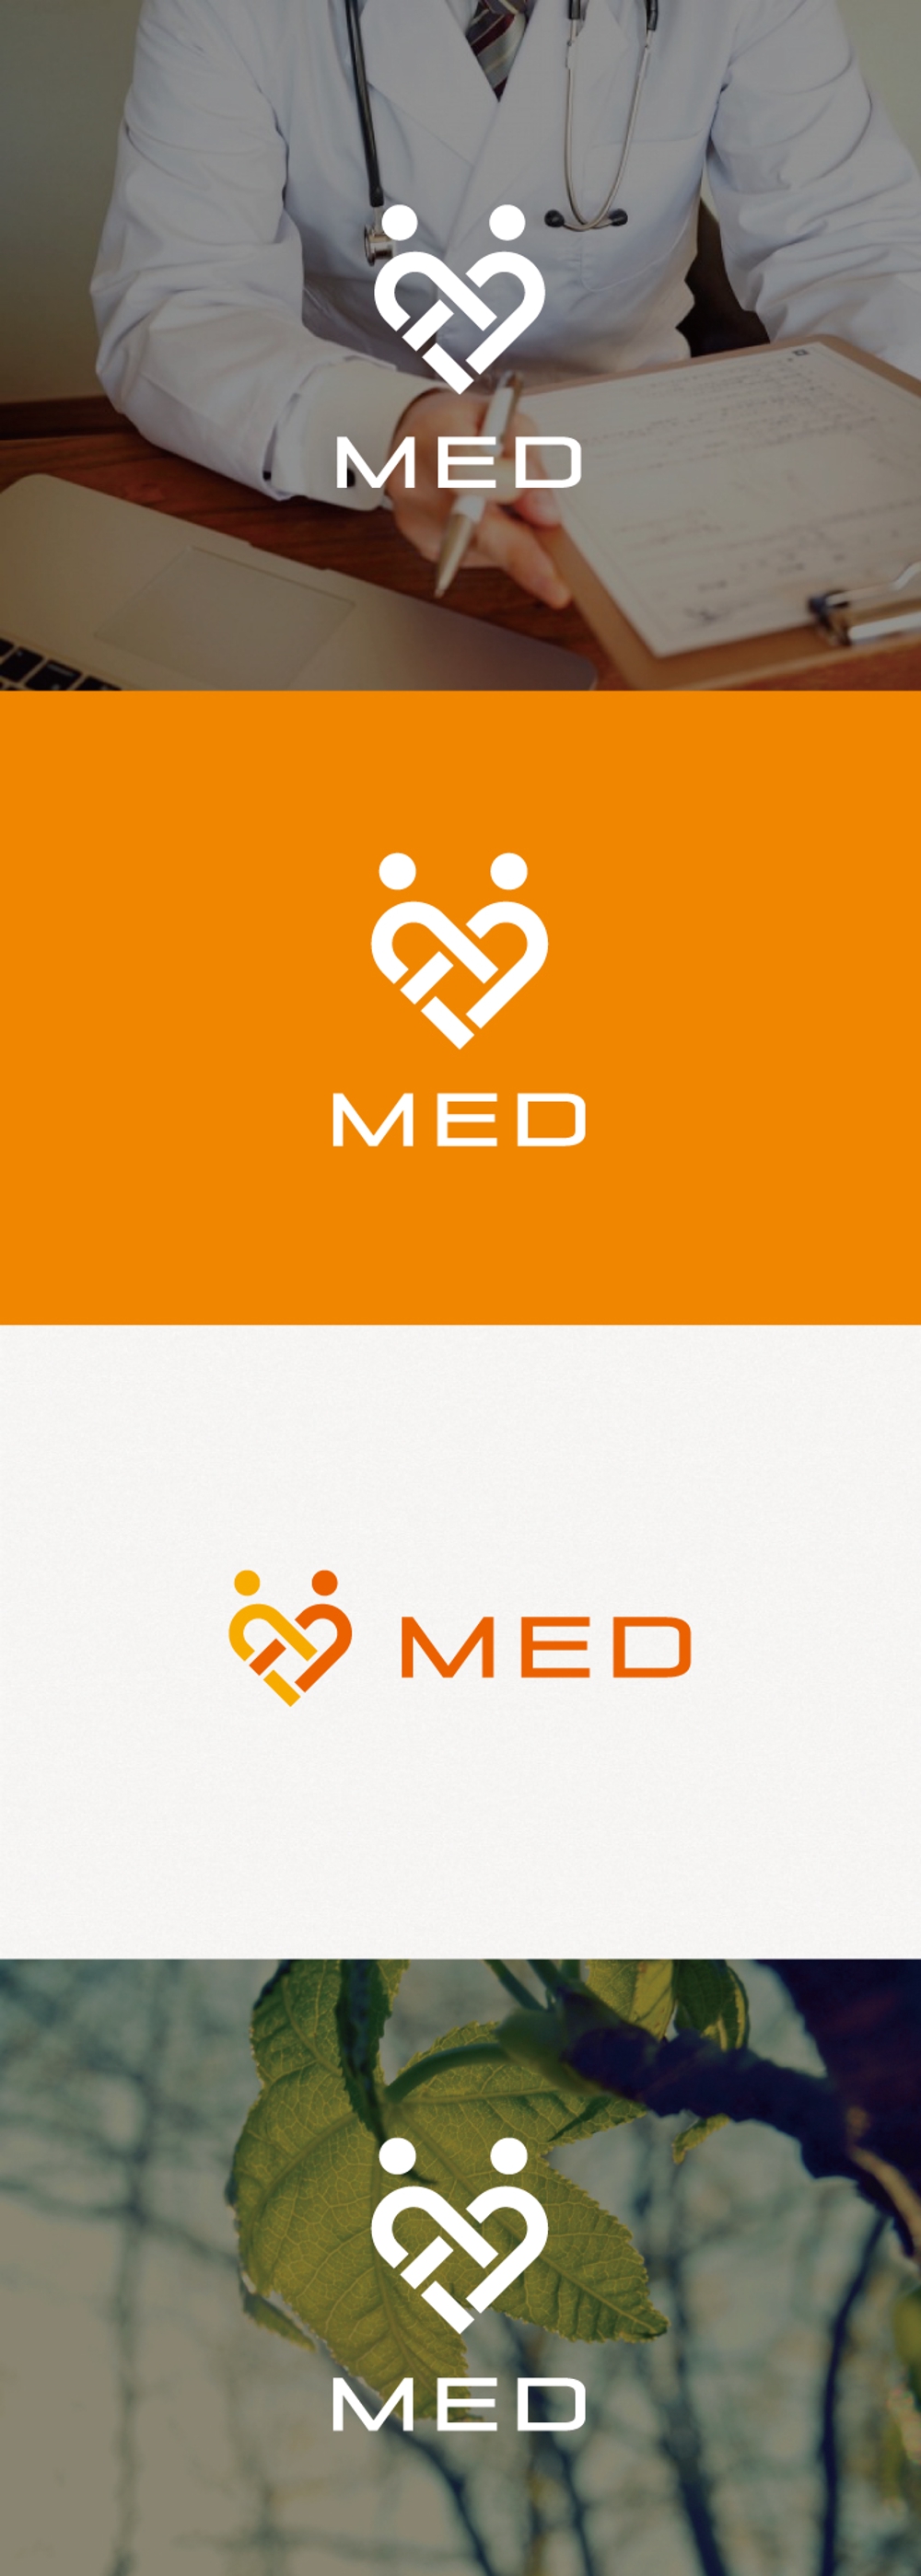 病院紹介ポータルサイト「MED」のロゴ